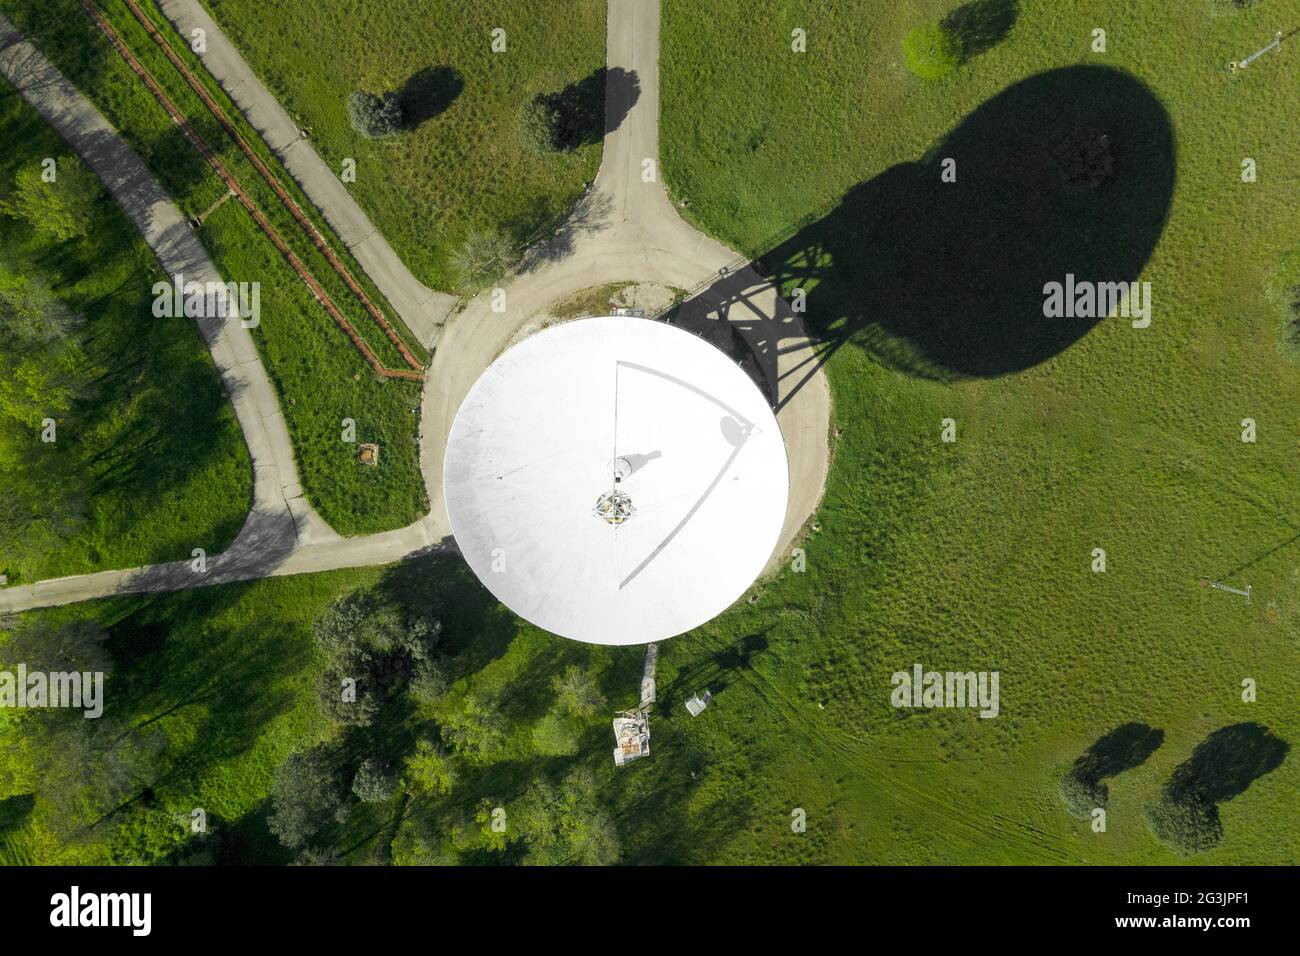 Vue aérienne d'une grande antenne de télécommunications ou d'une antenne parabolique radiotélescope. Photo de haute qualité. Banque D'Images